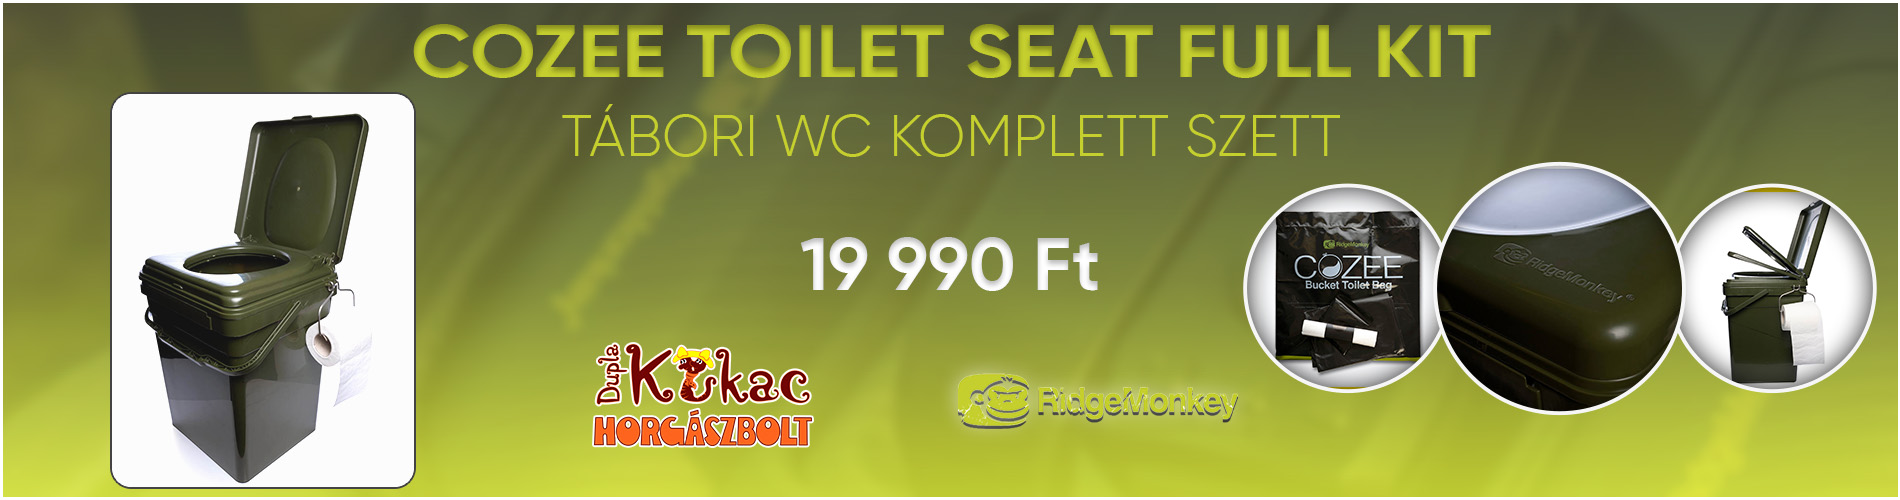 slide /fotky1417/slider/RIDGEMONKEY-COZEE-TOILET-SEAT-FULL-KIT---TABORI-WC-KOMPLETT-SZETT-banner.jpg